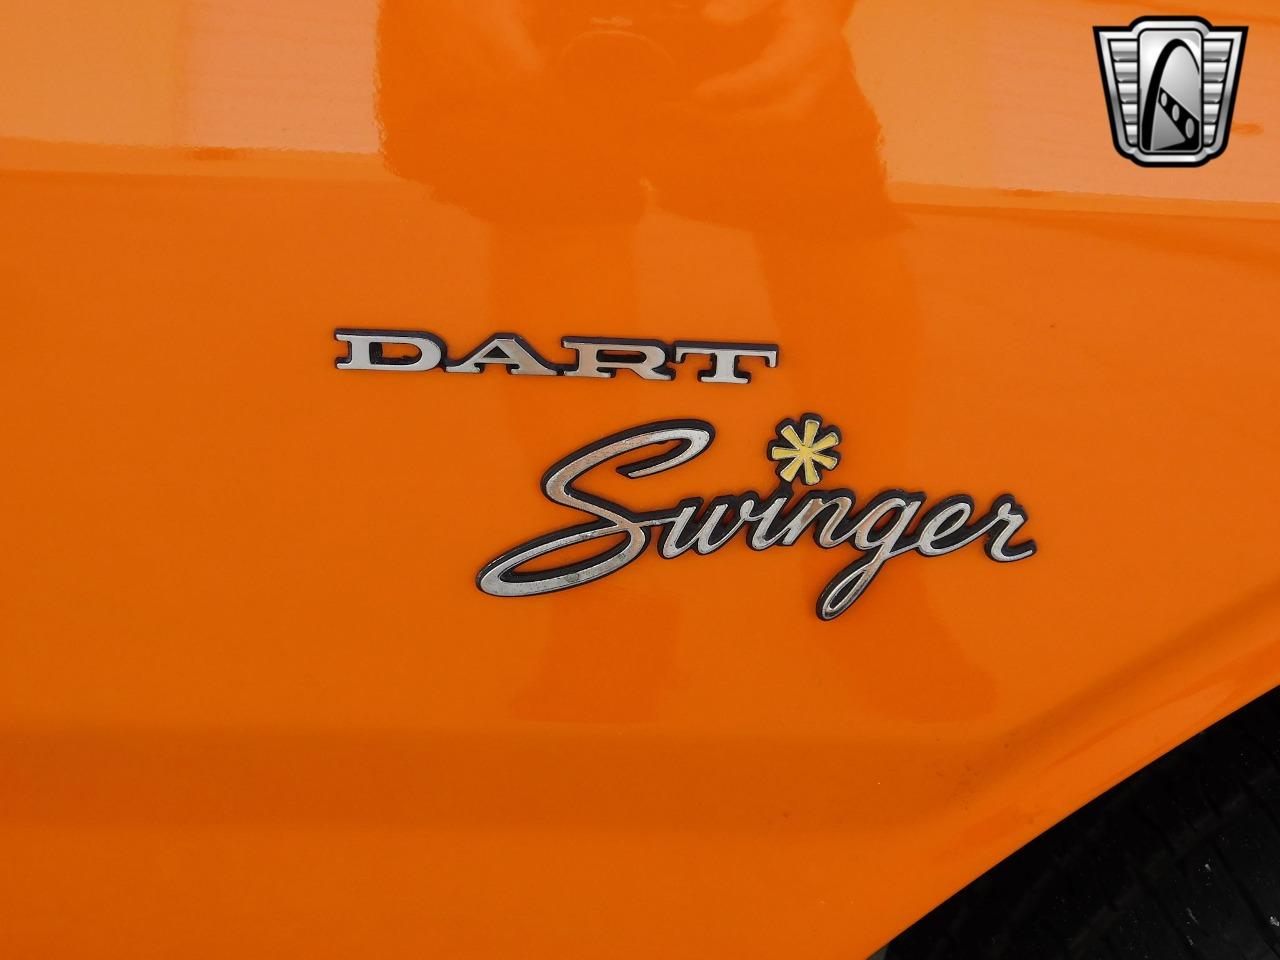 1971 Dodge Dart Swinger